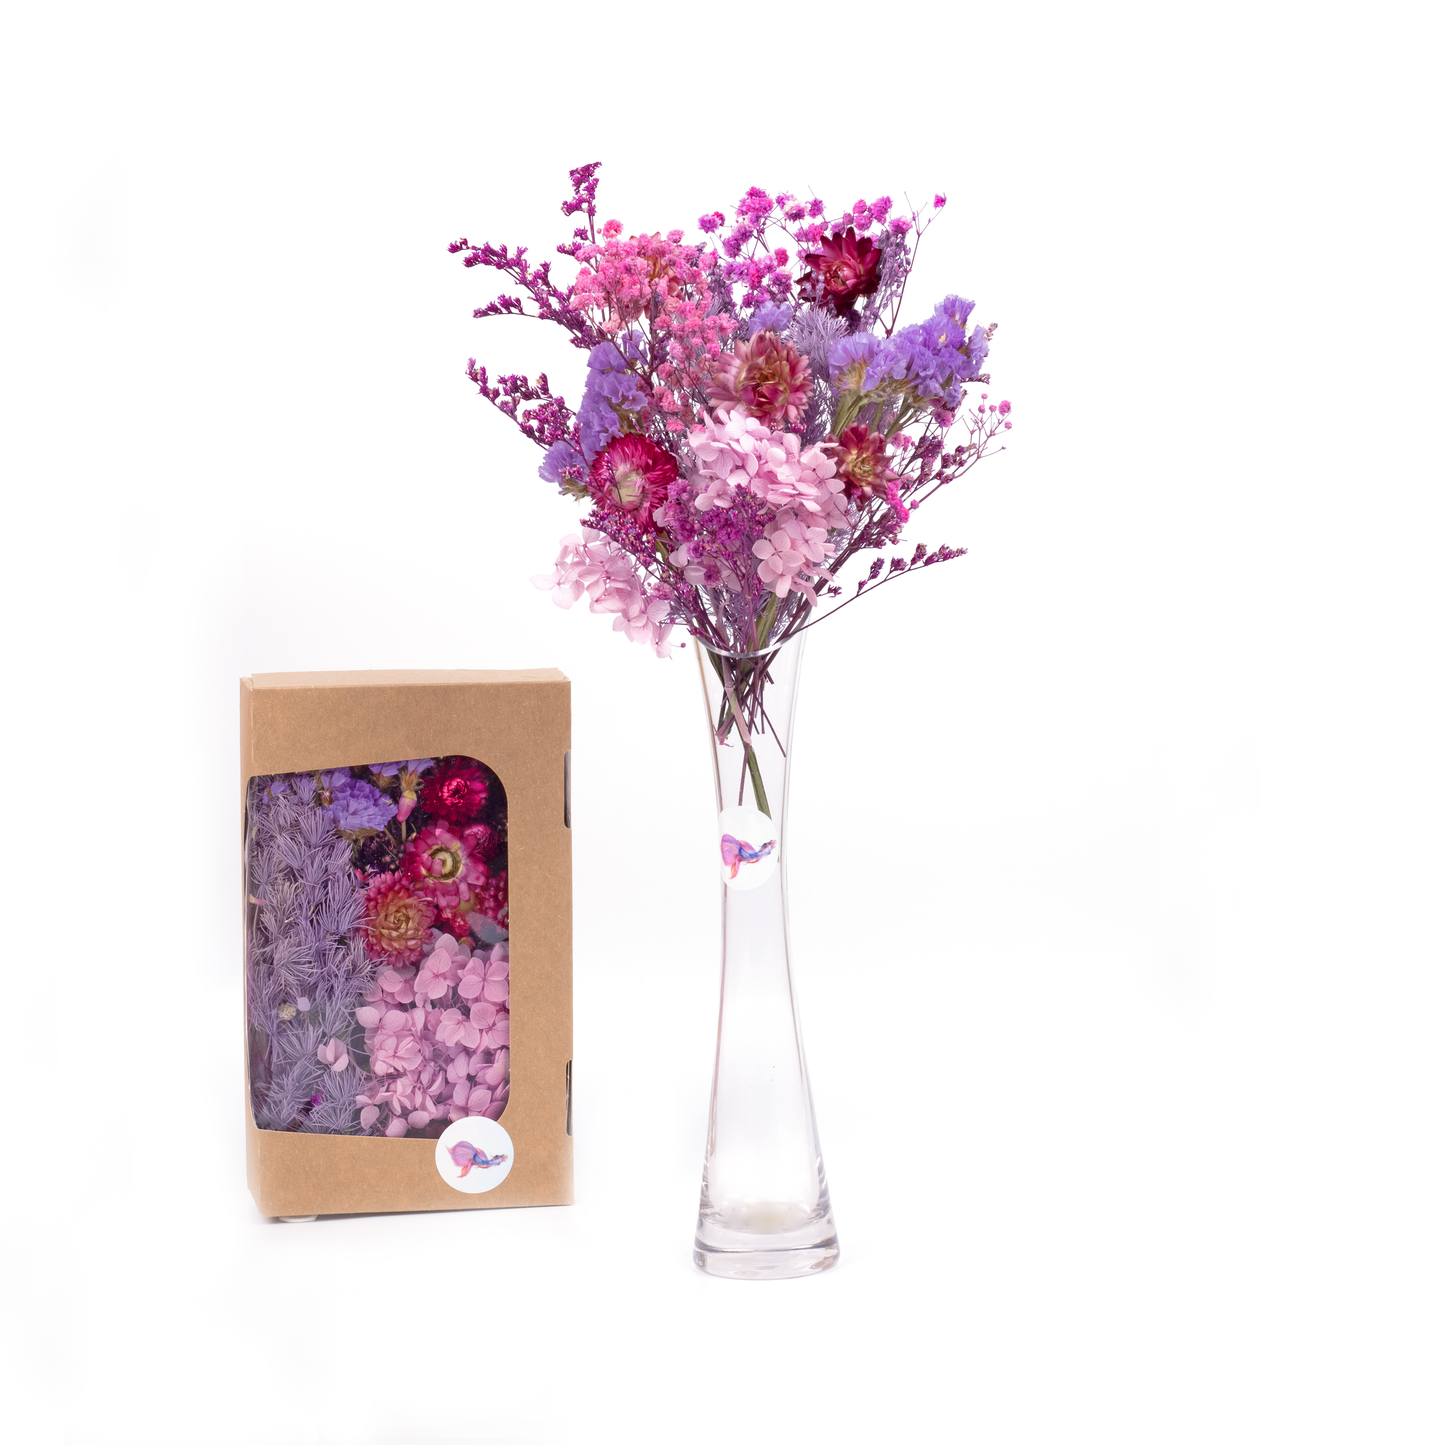 Box mit getrockneten Blumen – Farblich abgestimmter Mix